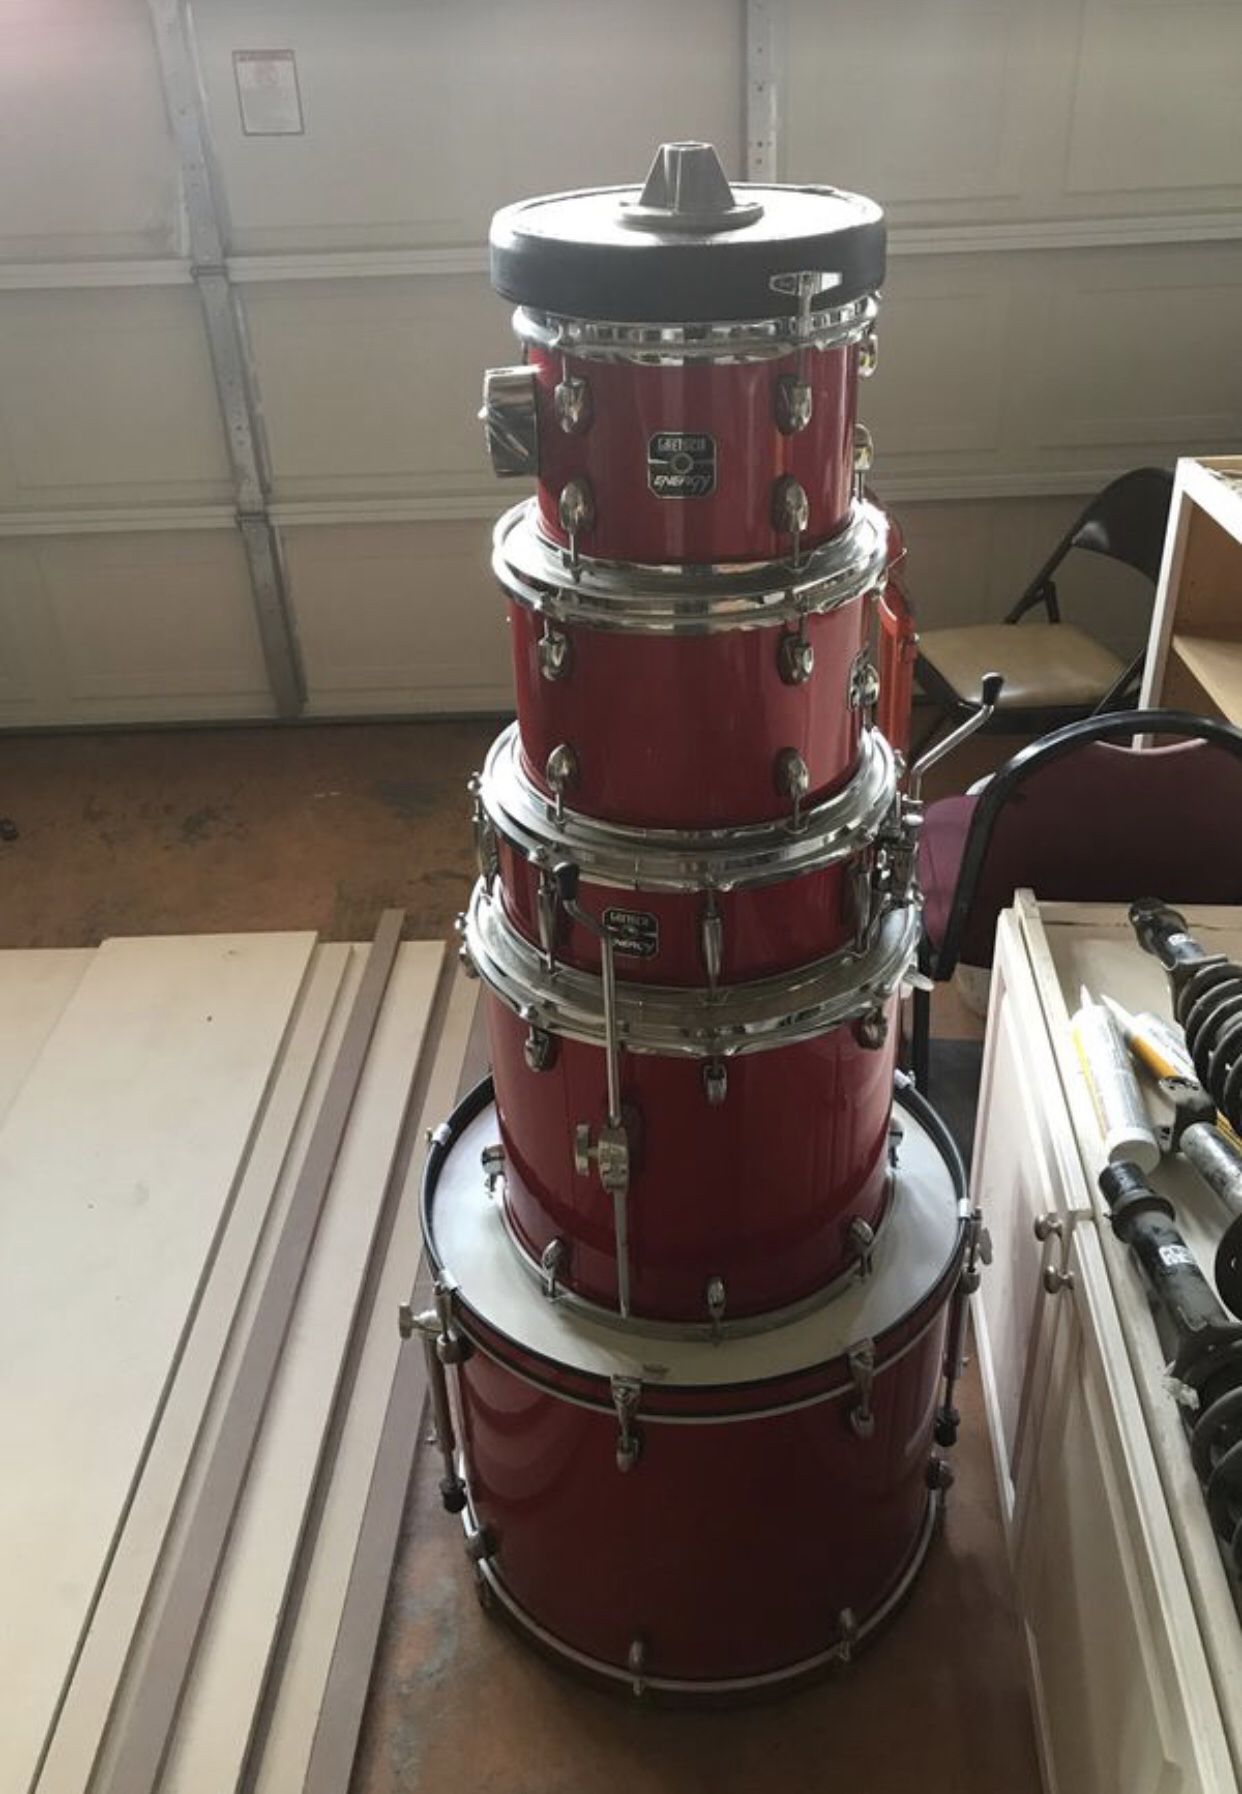 Gretsch drum set